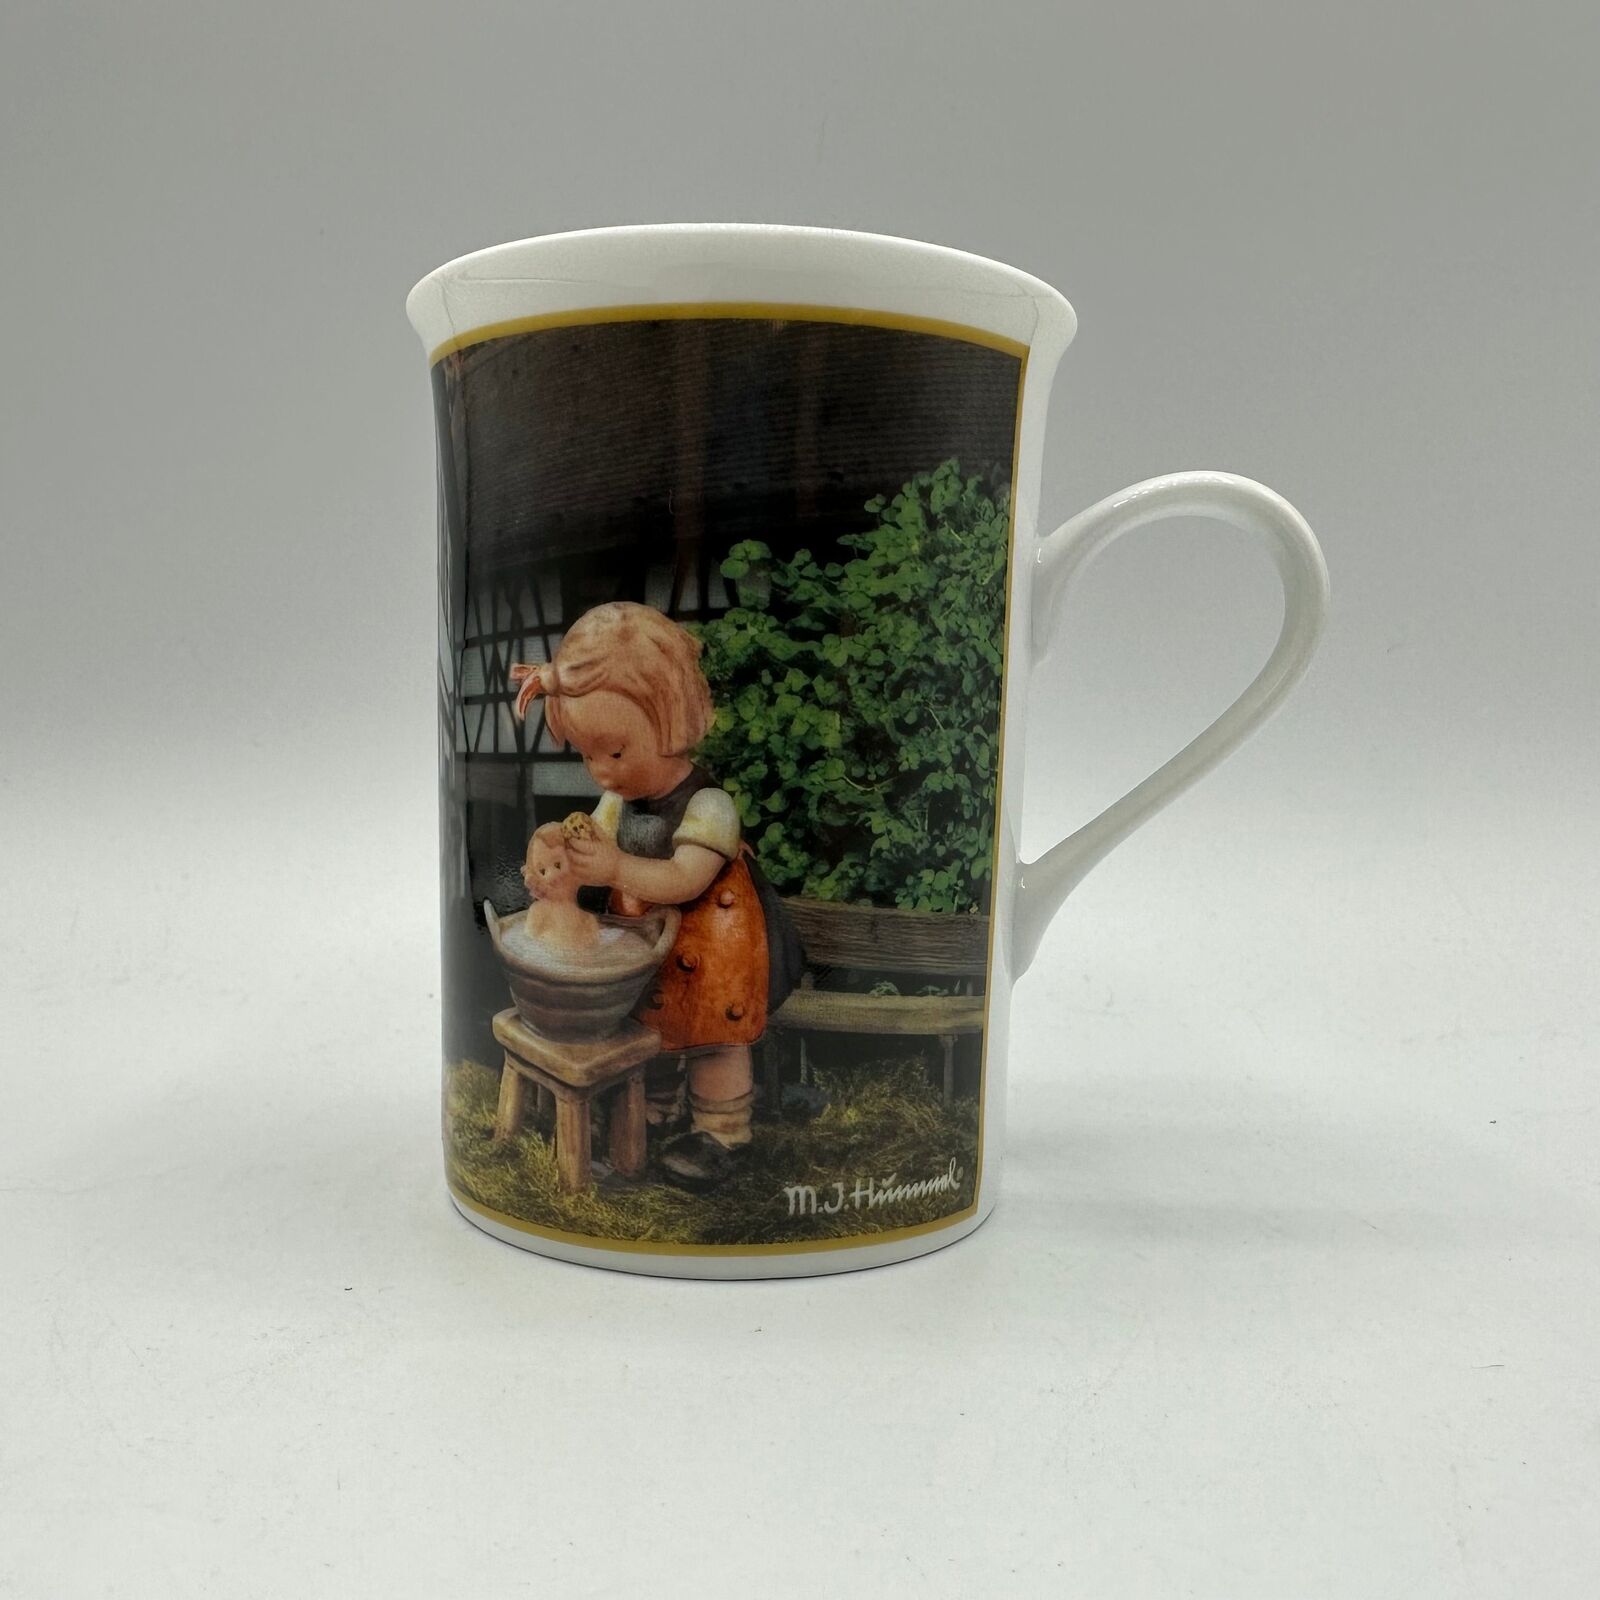 M.I. Hummel Porcelain Collector Mug \